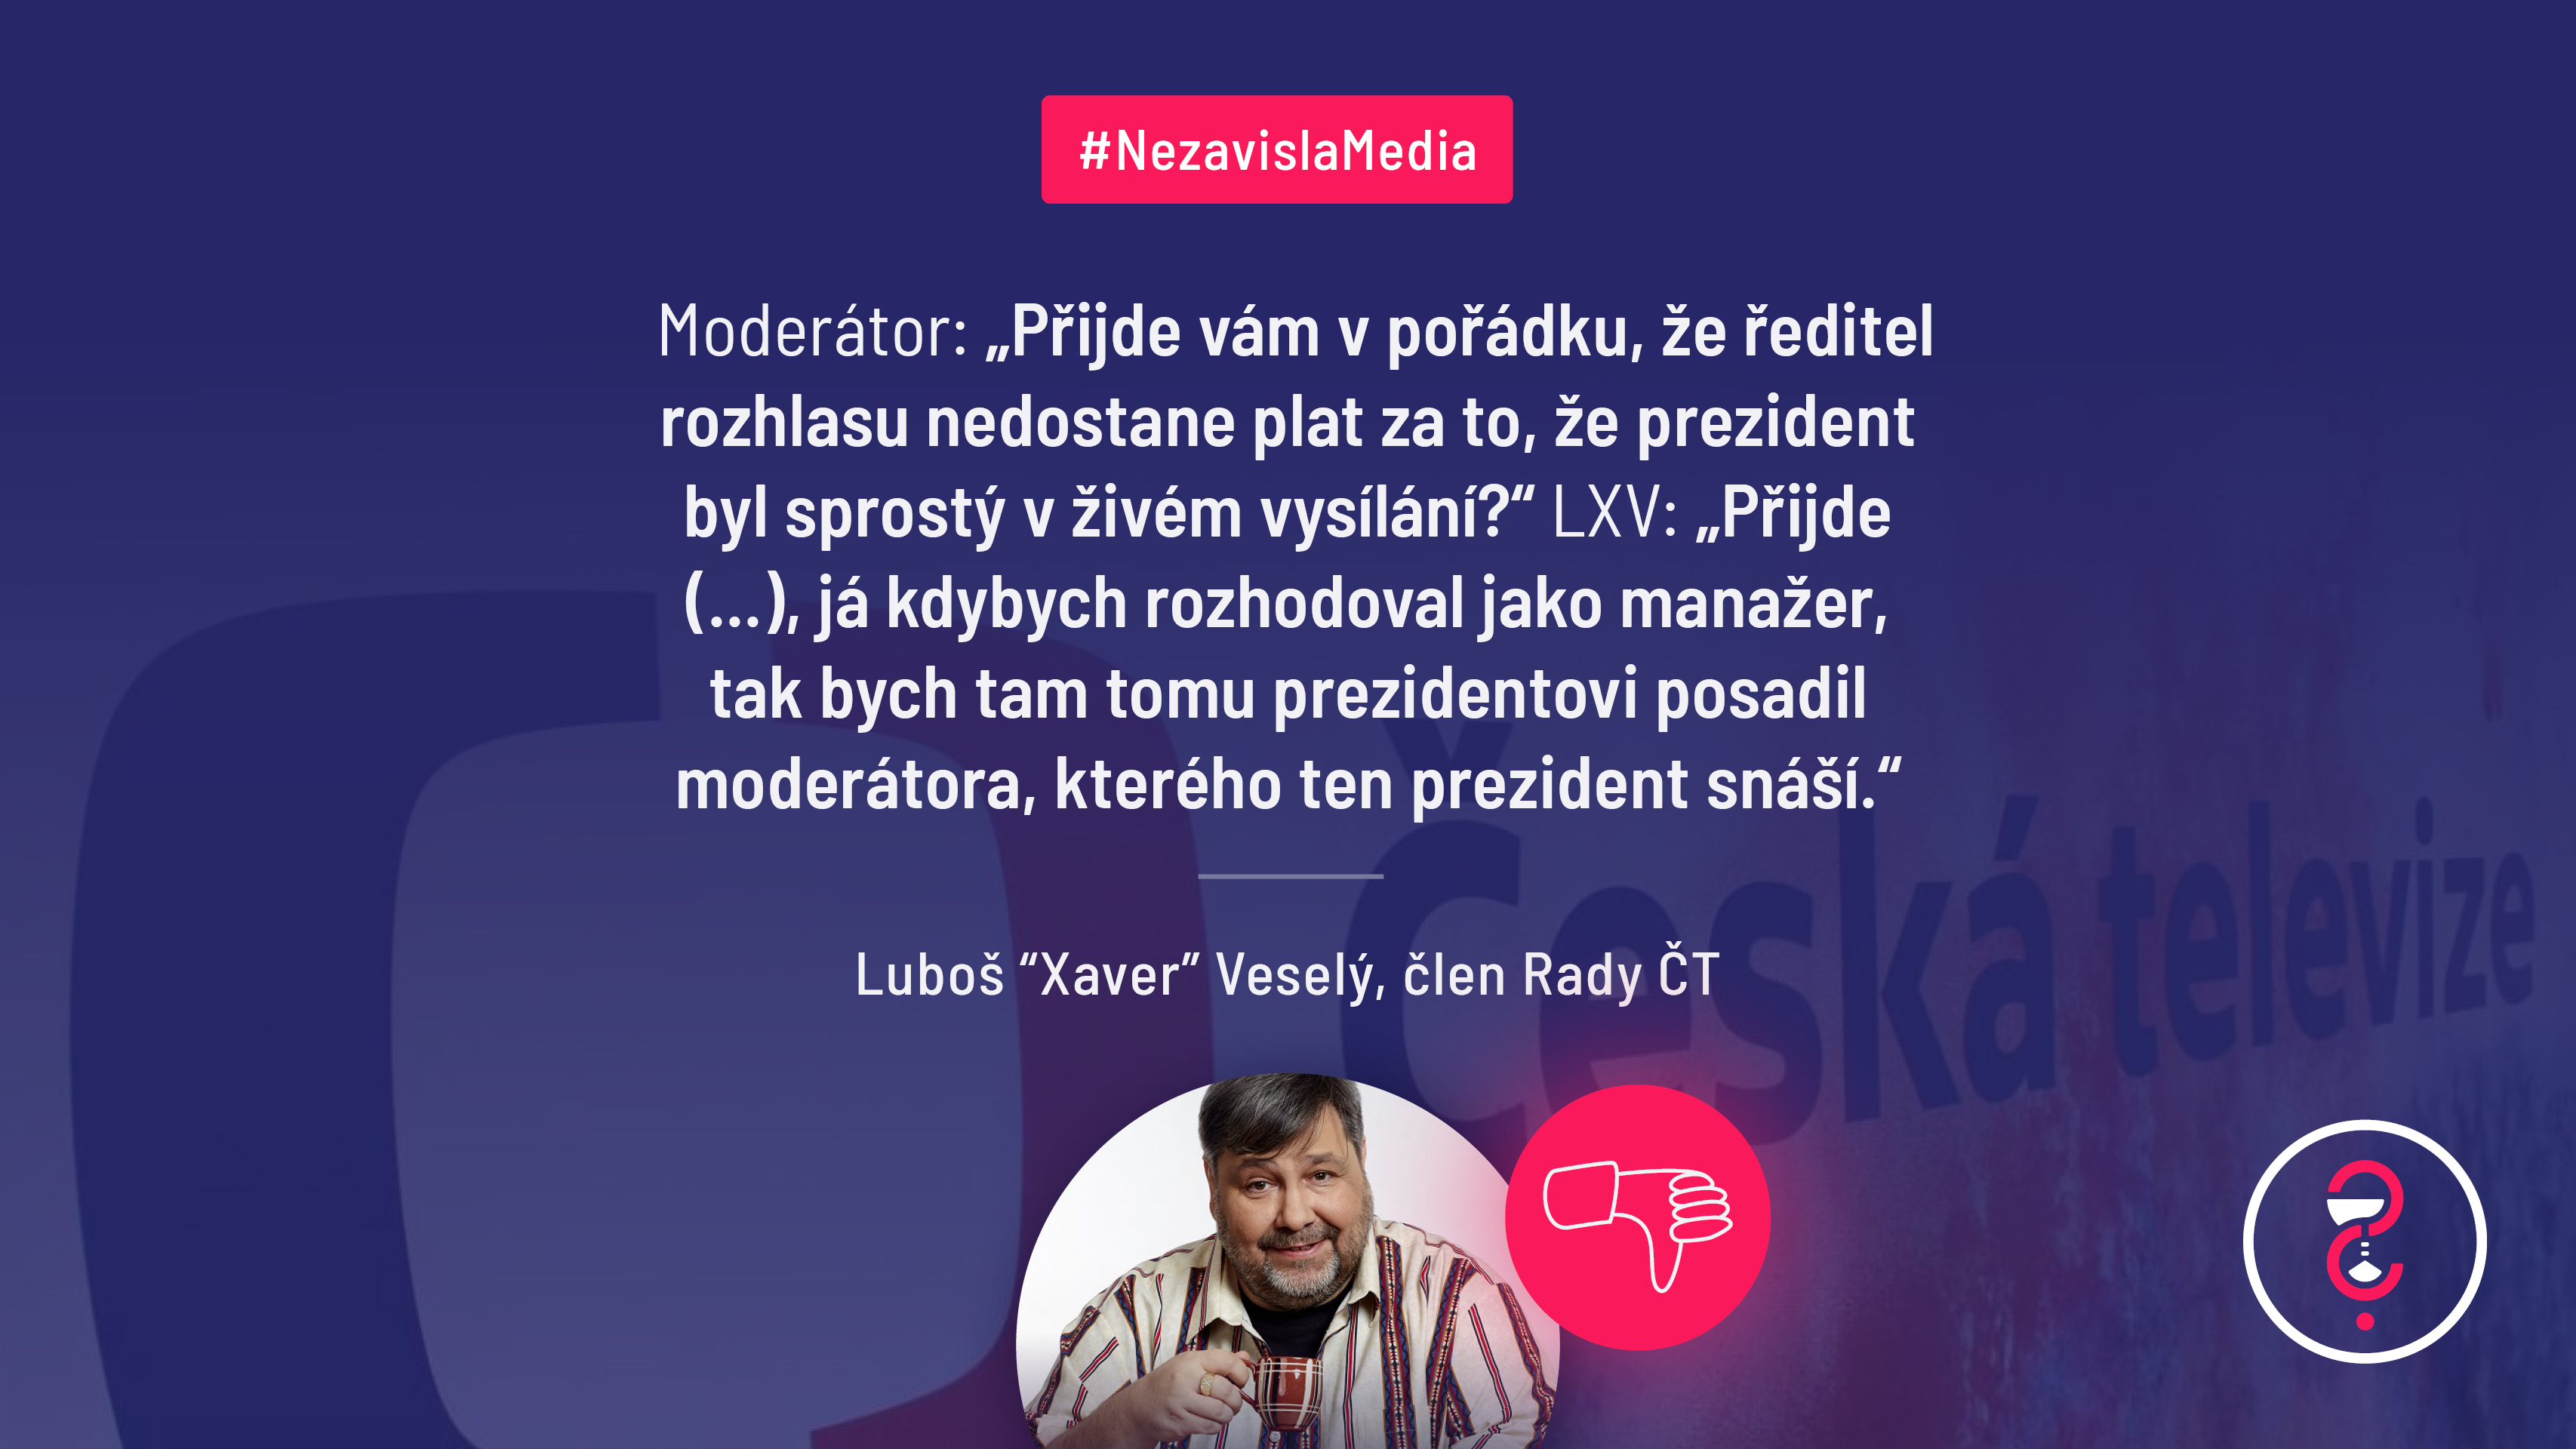 Luboš Xaver Veselý z Rady ČT označuje veřejnoprávní média za samozvance